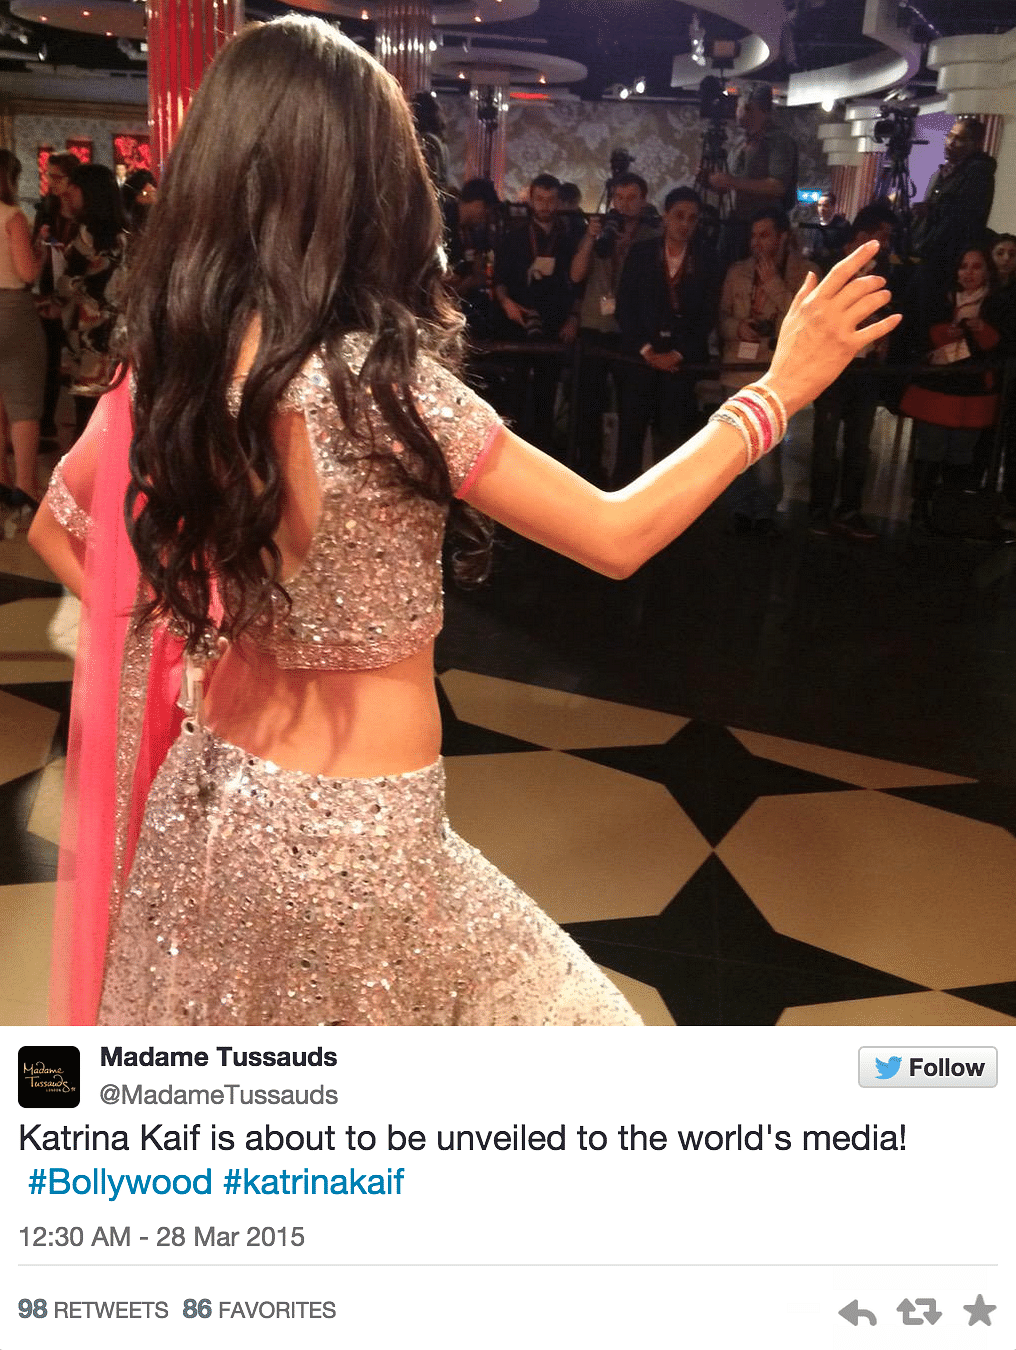 Katrina Kaif joins other Bollywood stars at Madame Tussauds, London. Take a look at Katrina’s wax version.